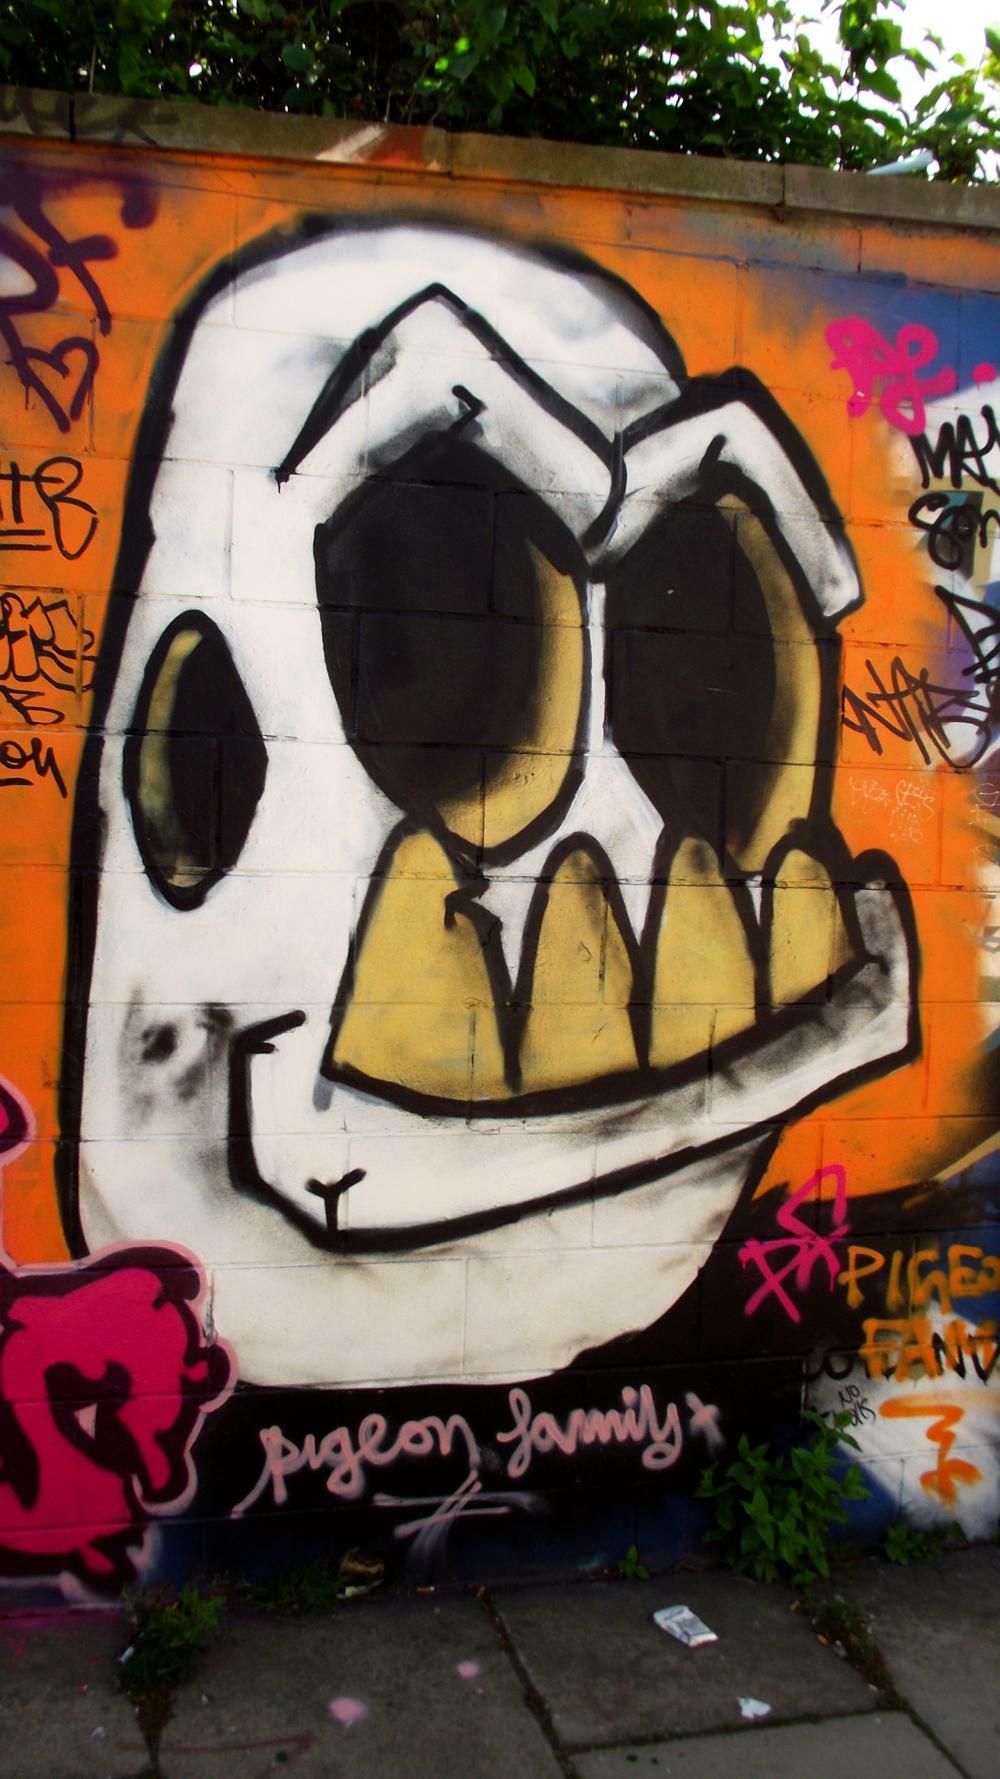 Flickr: Street Art 010, white skull, by byronv2